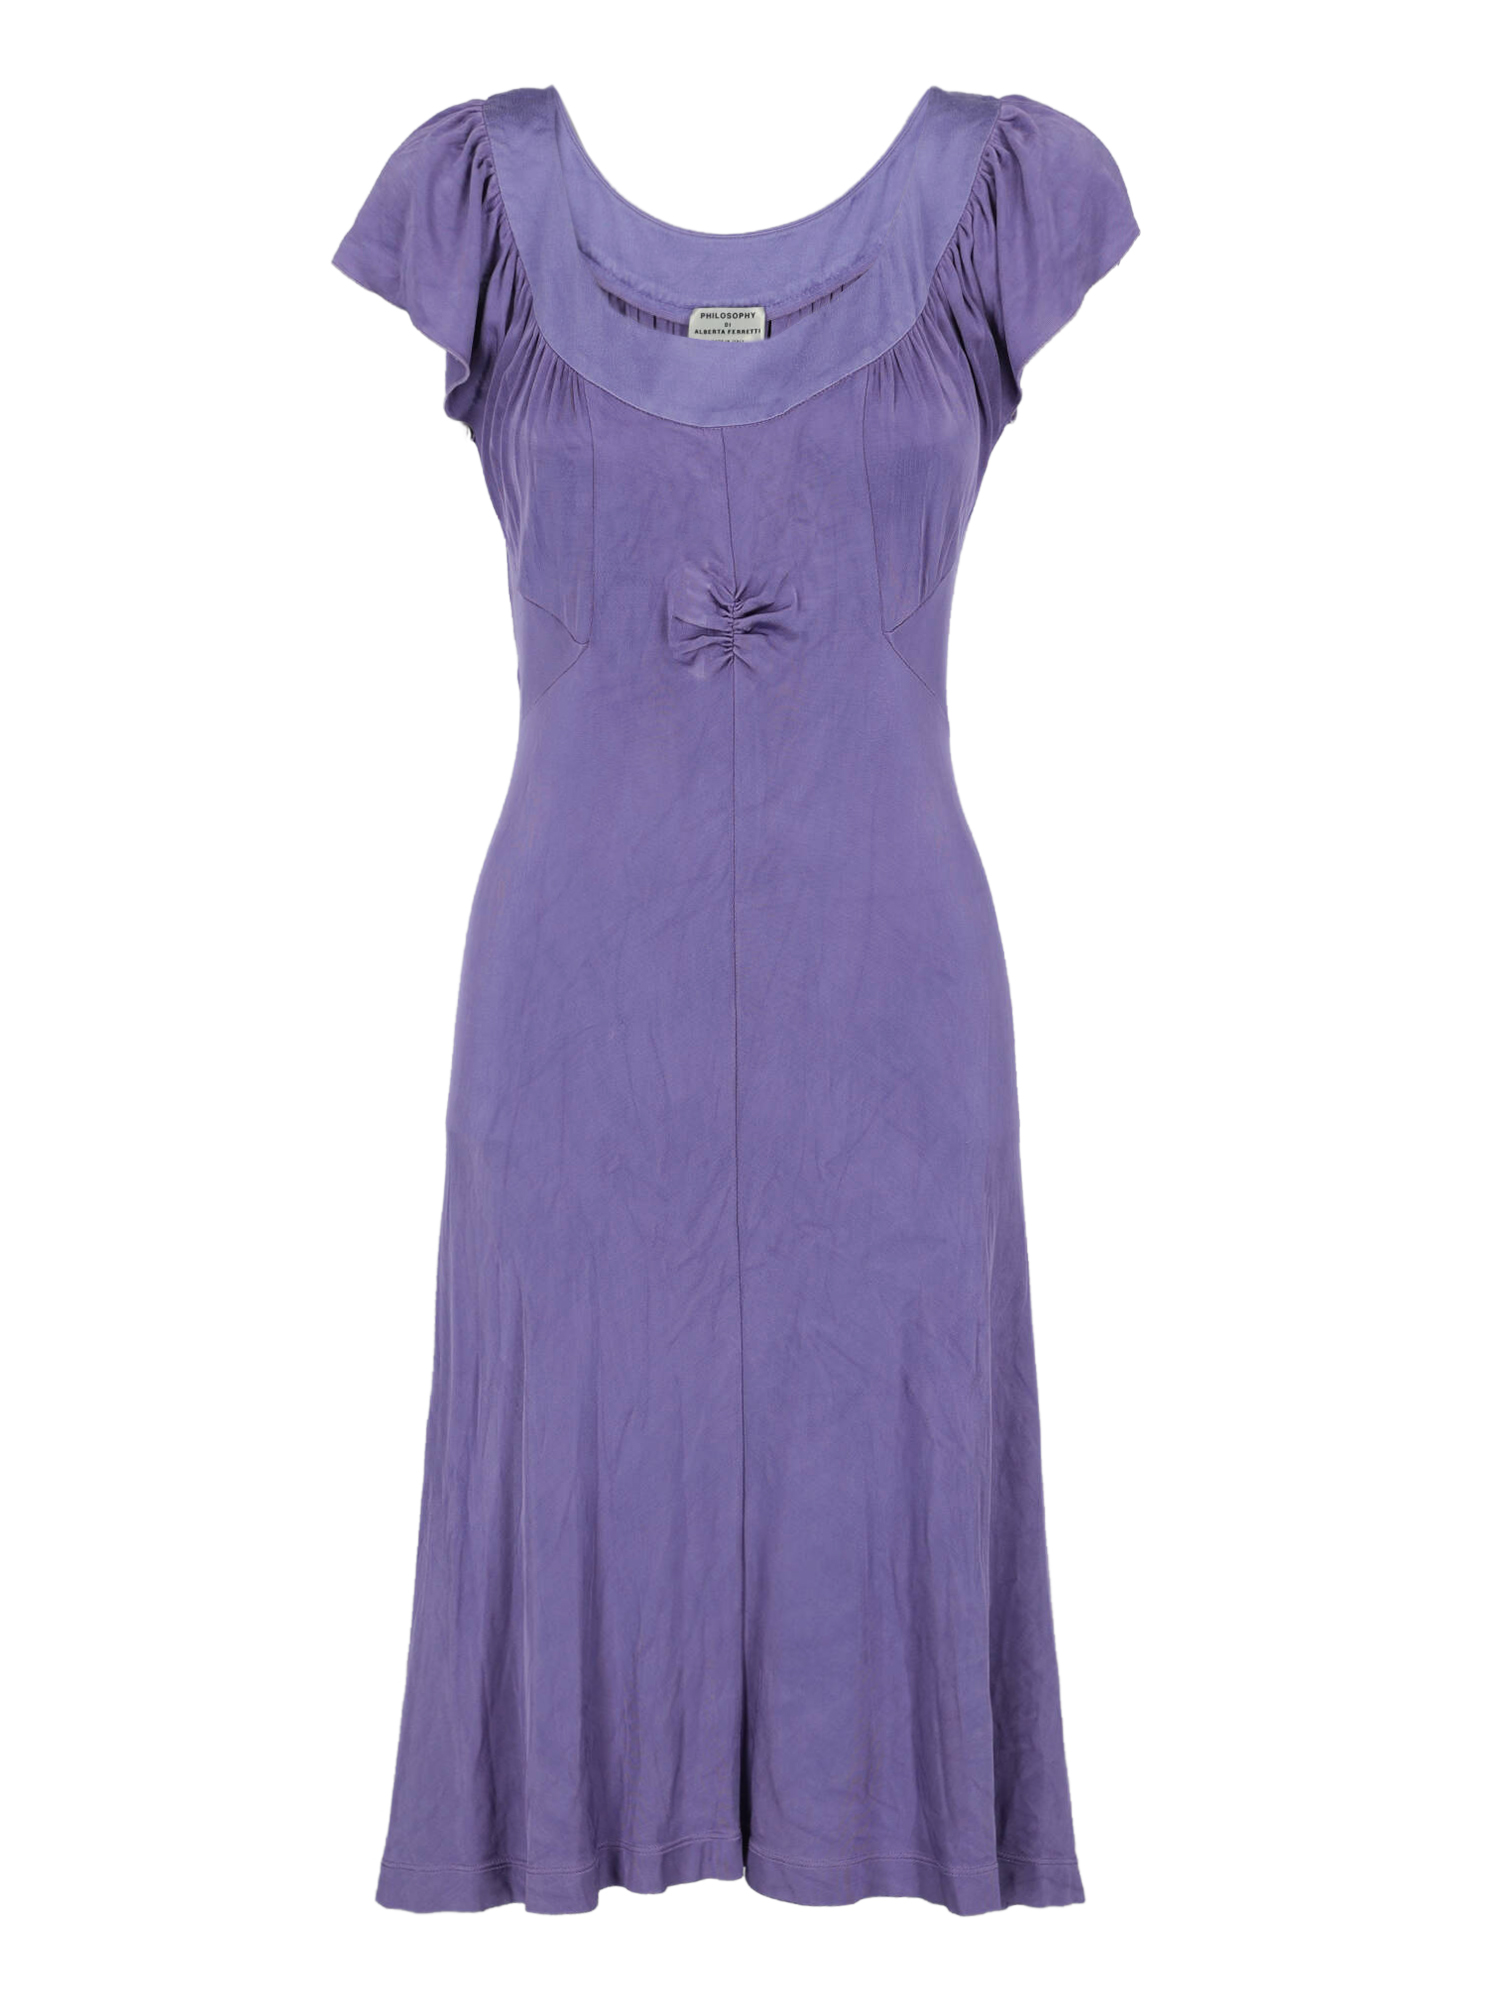 Robes Pour Femme - Philosophy - En Synthetic Fibers Purple - Taille:  -